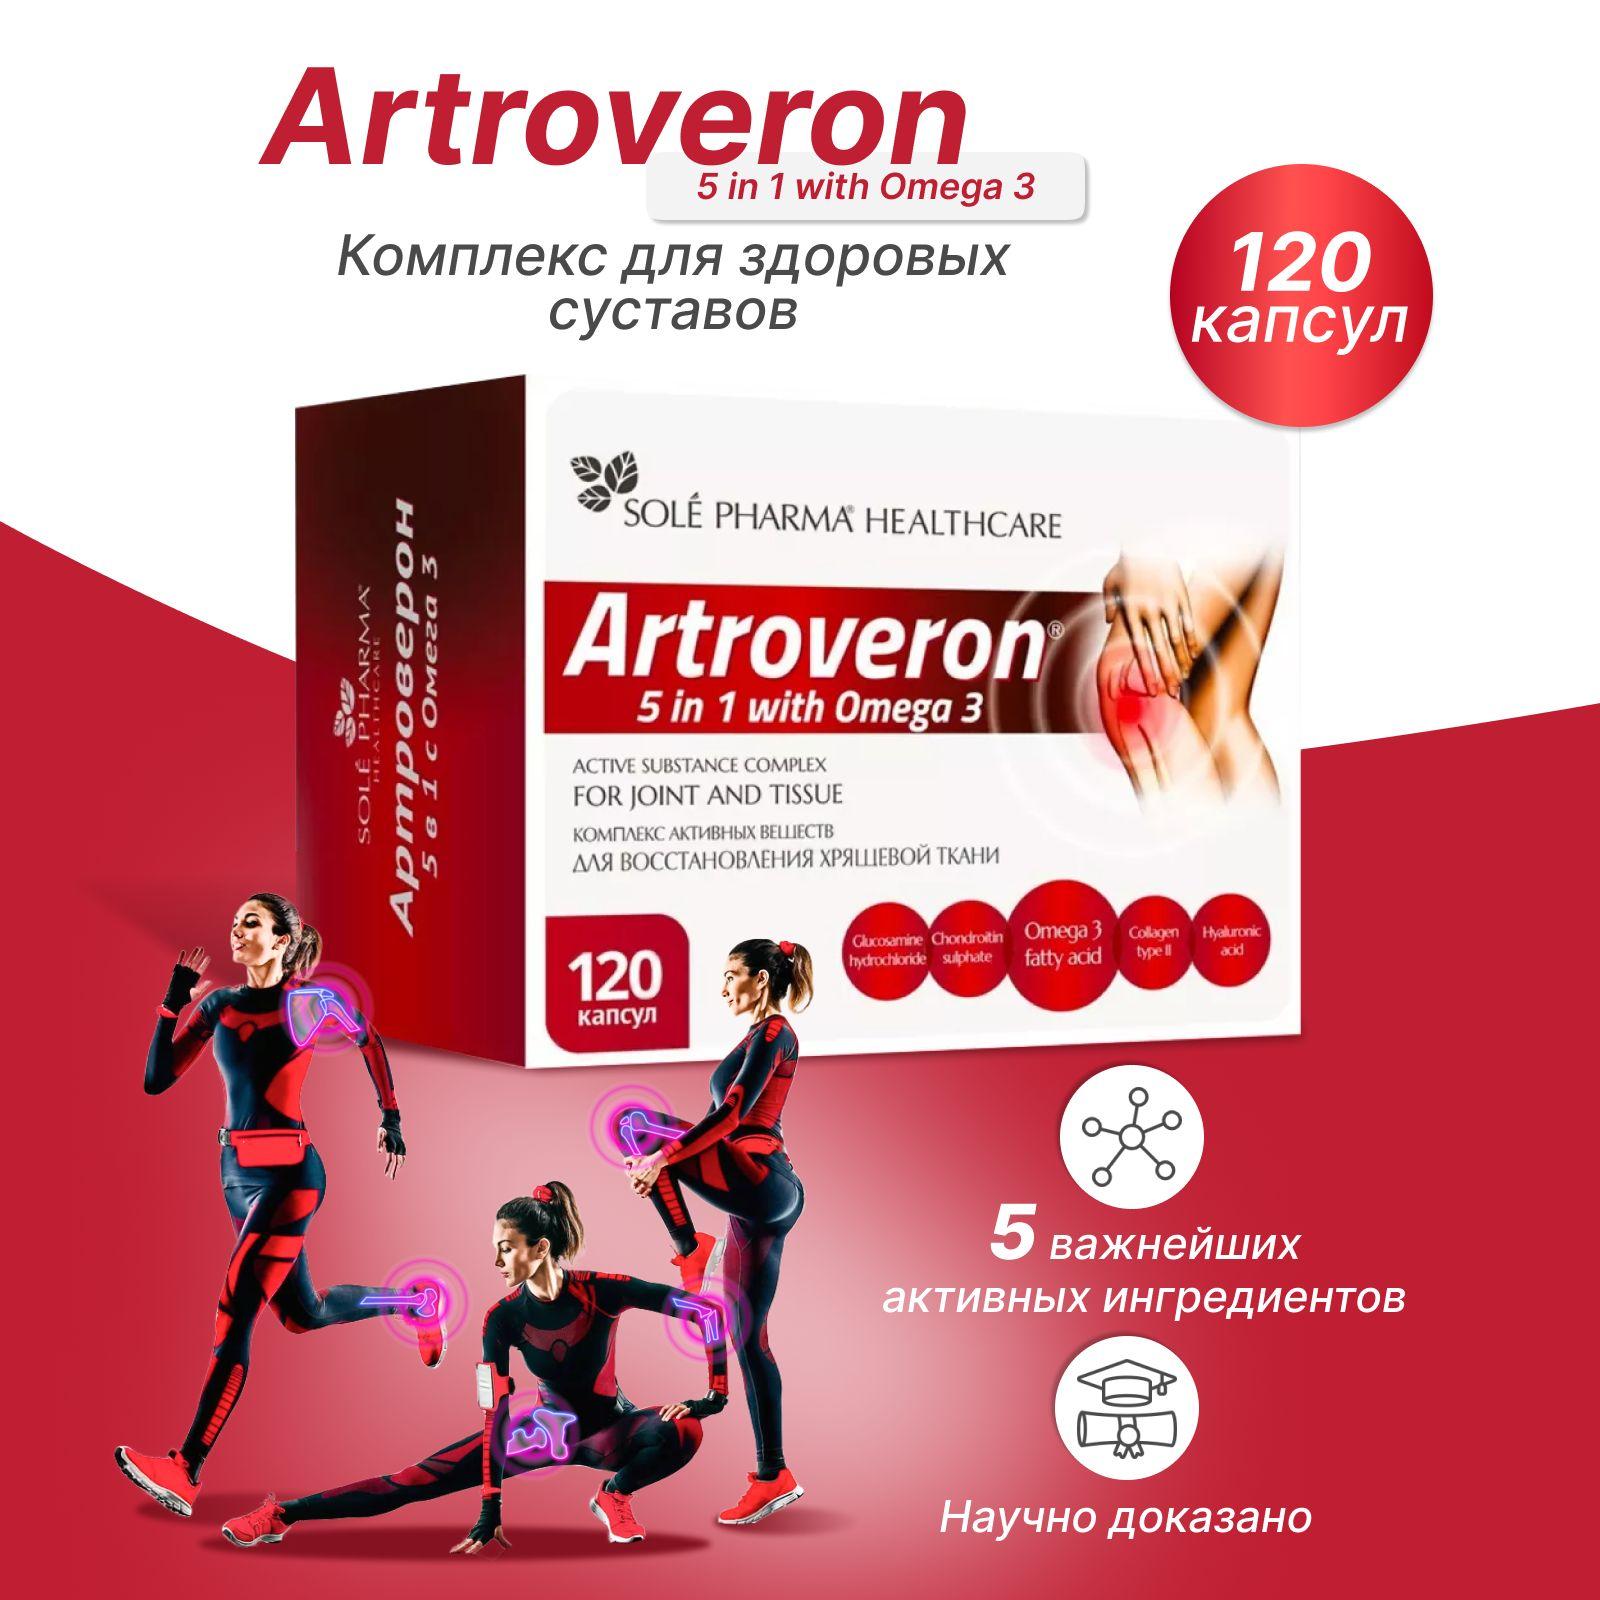 Артроверон 5в1 глюкозамин, хондроитин, коллаген 2 типа, гиалуроновая кислота, омега 3 для суставов и связок - хондропротектор комплекс, 120 капсул